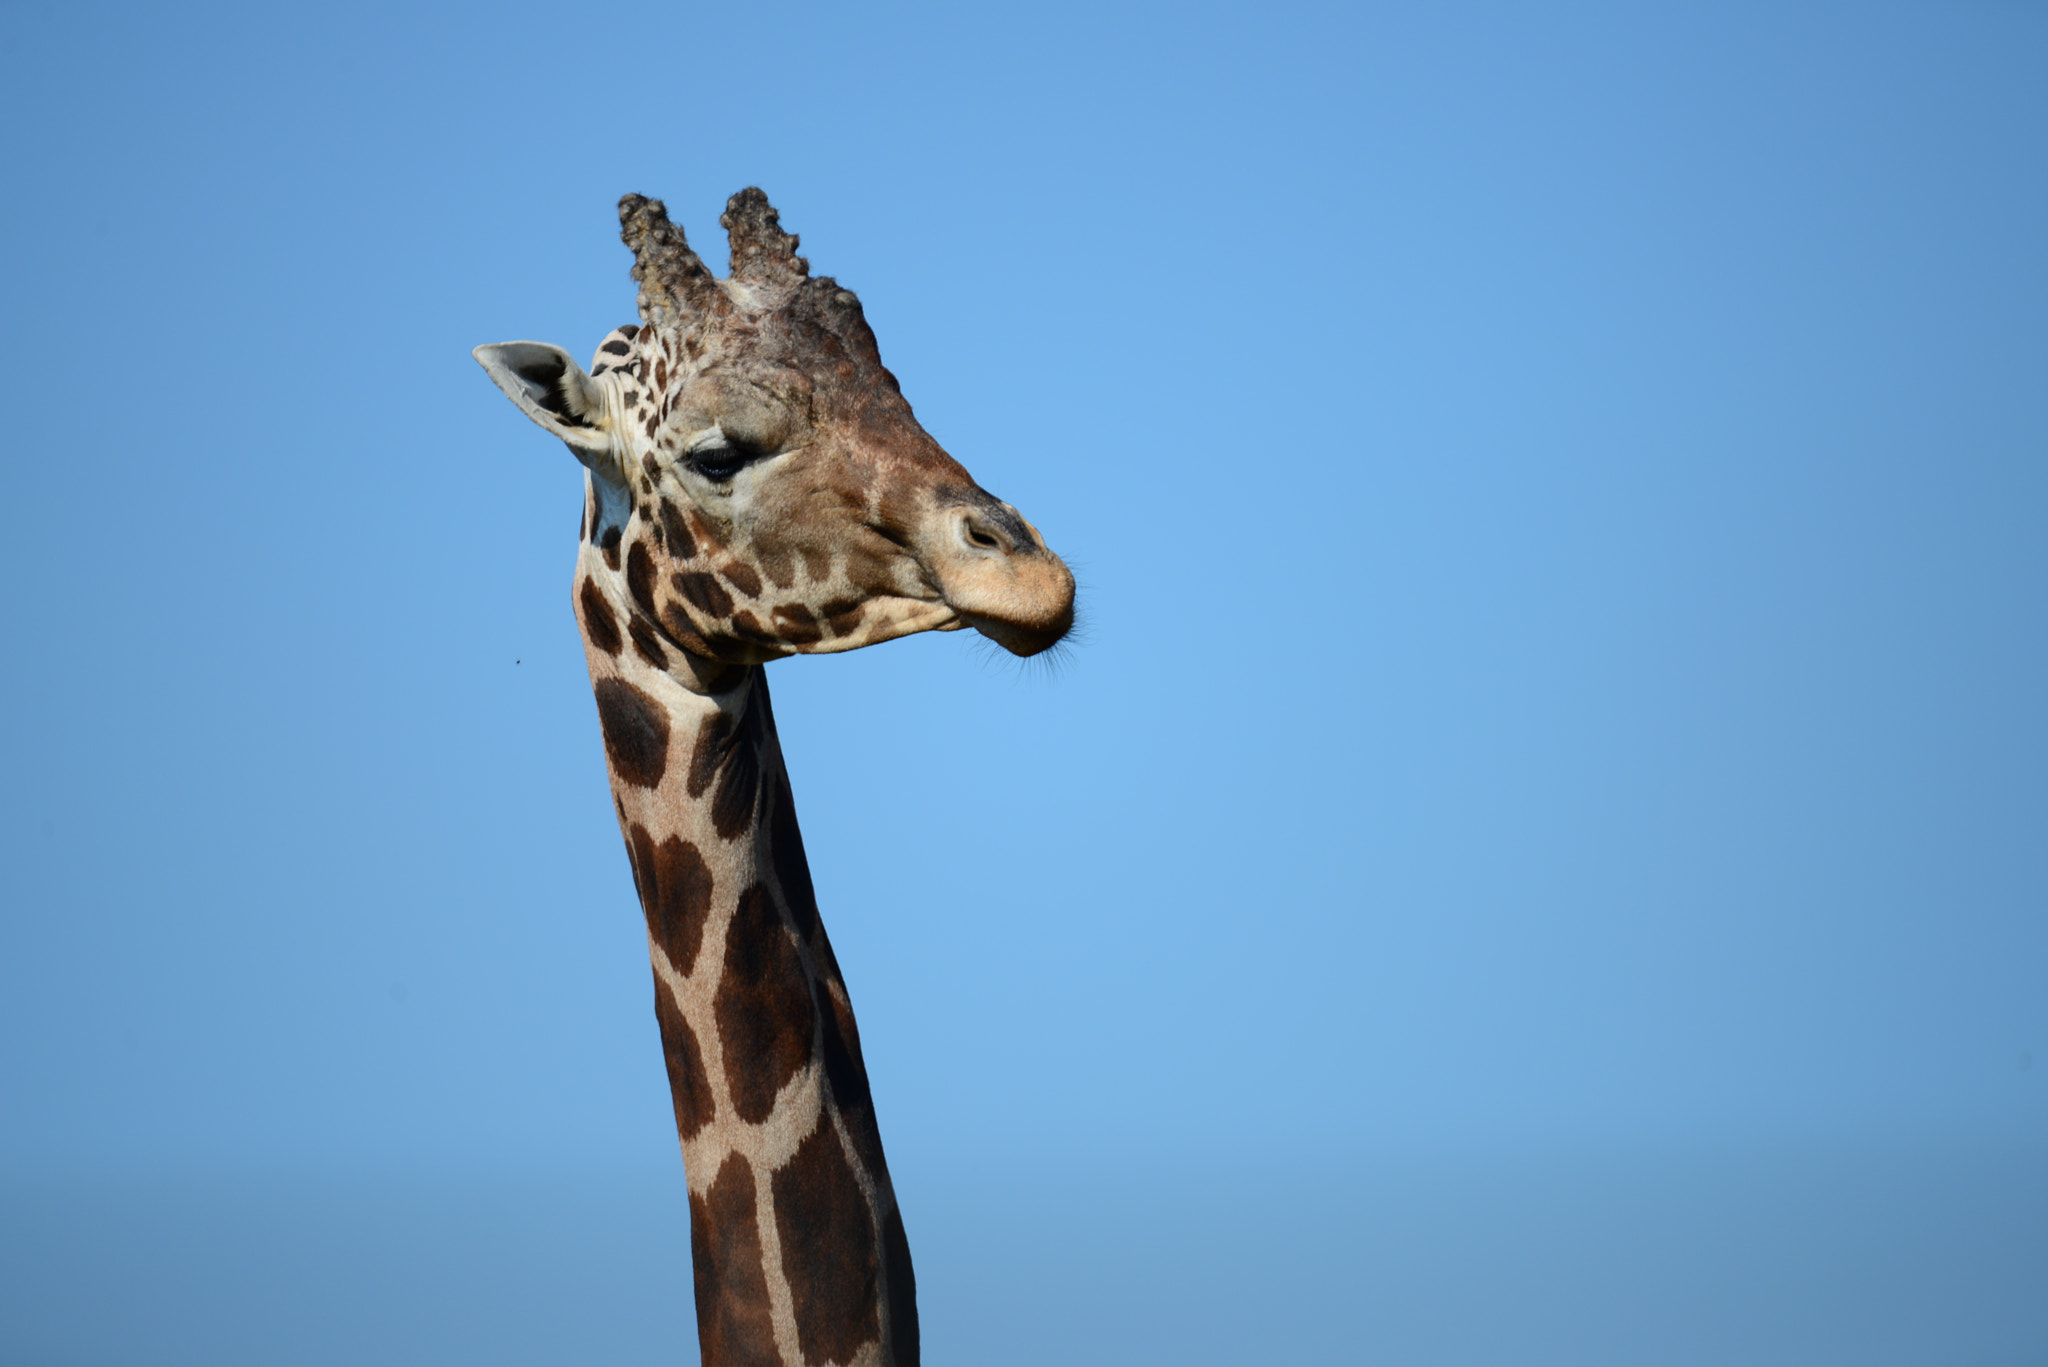 Nikon D600 sample photo. Giraffe photography